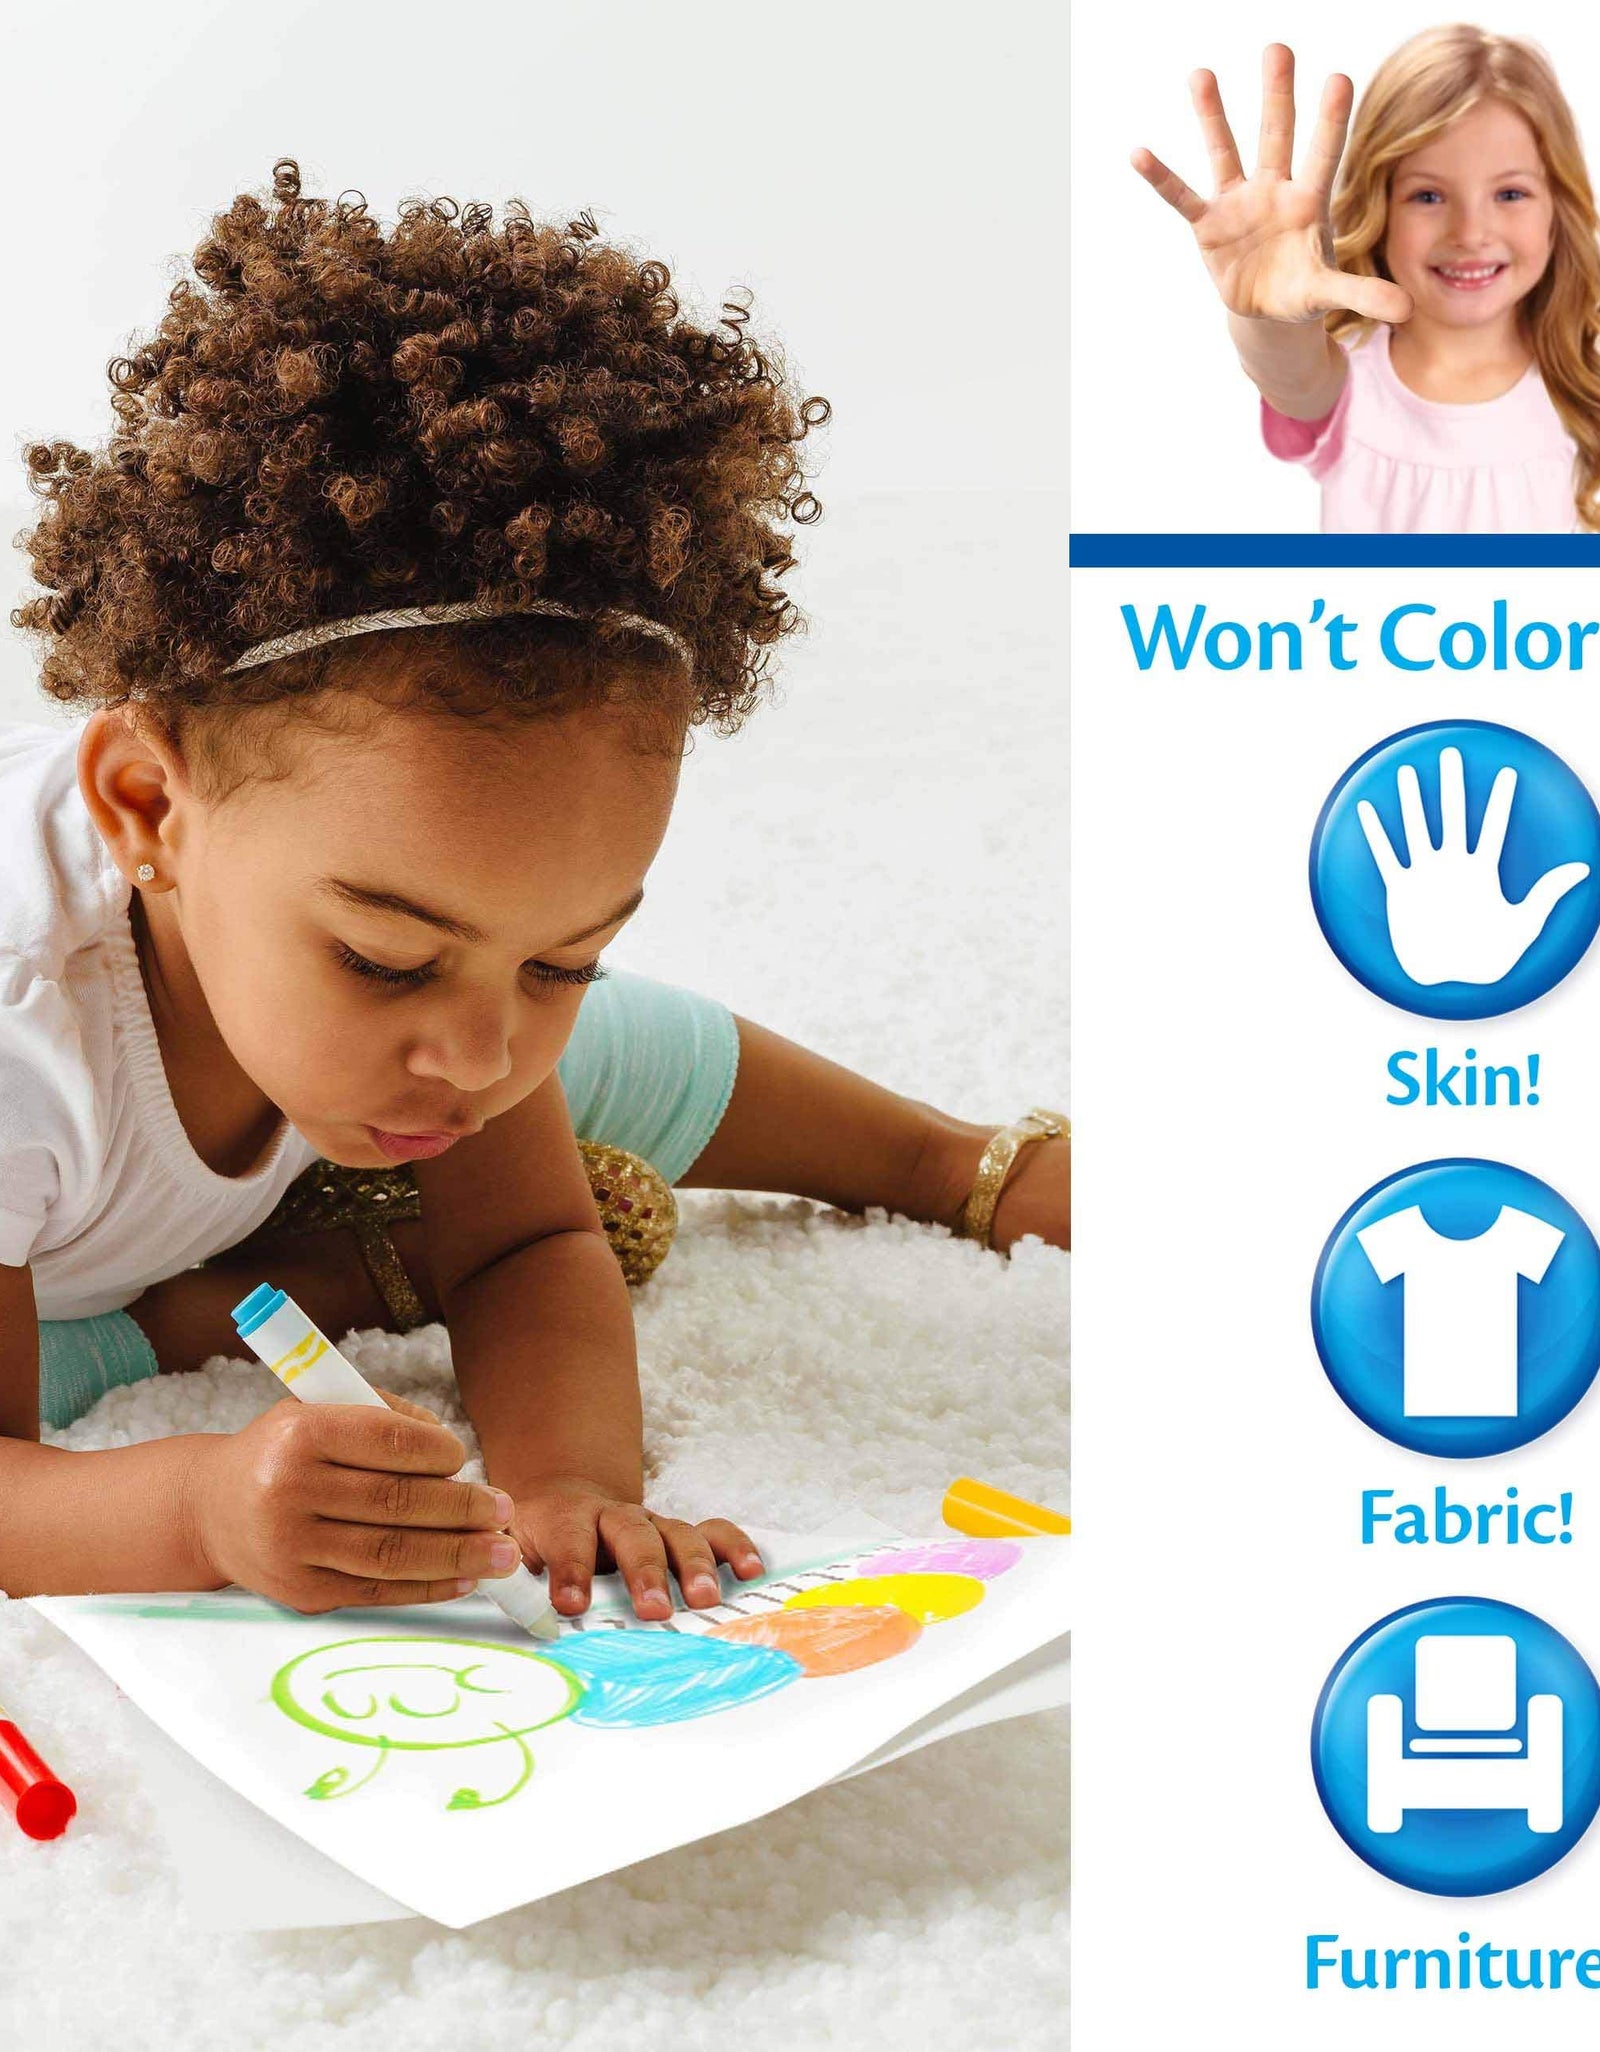 Crayola Peppa Pig Wonder Mess Free Coloring Set, Gift for Kids